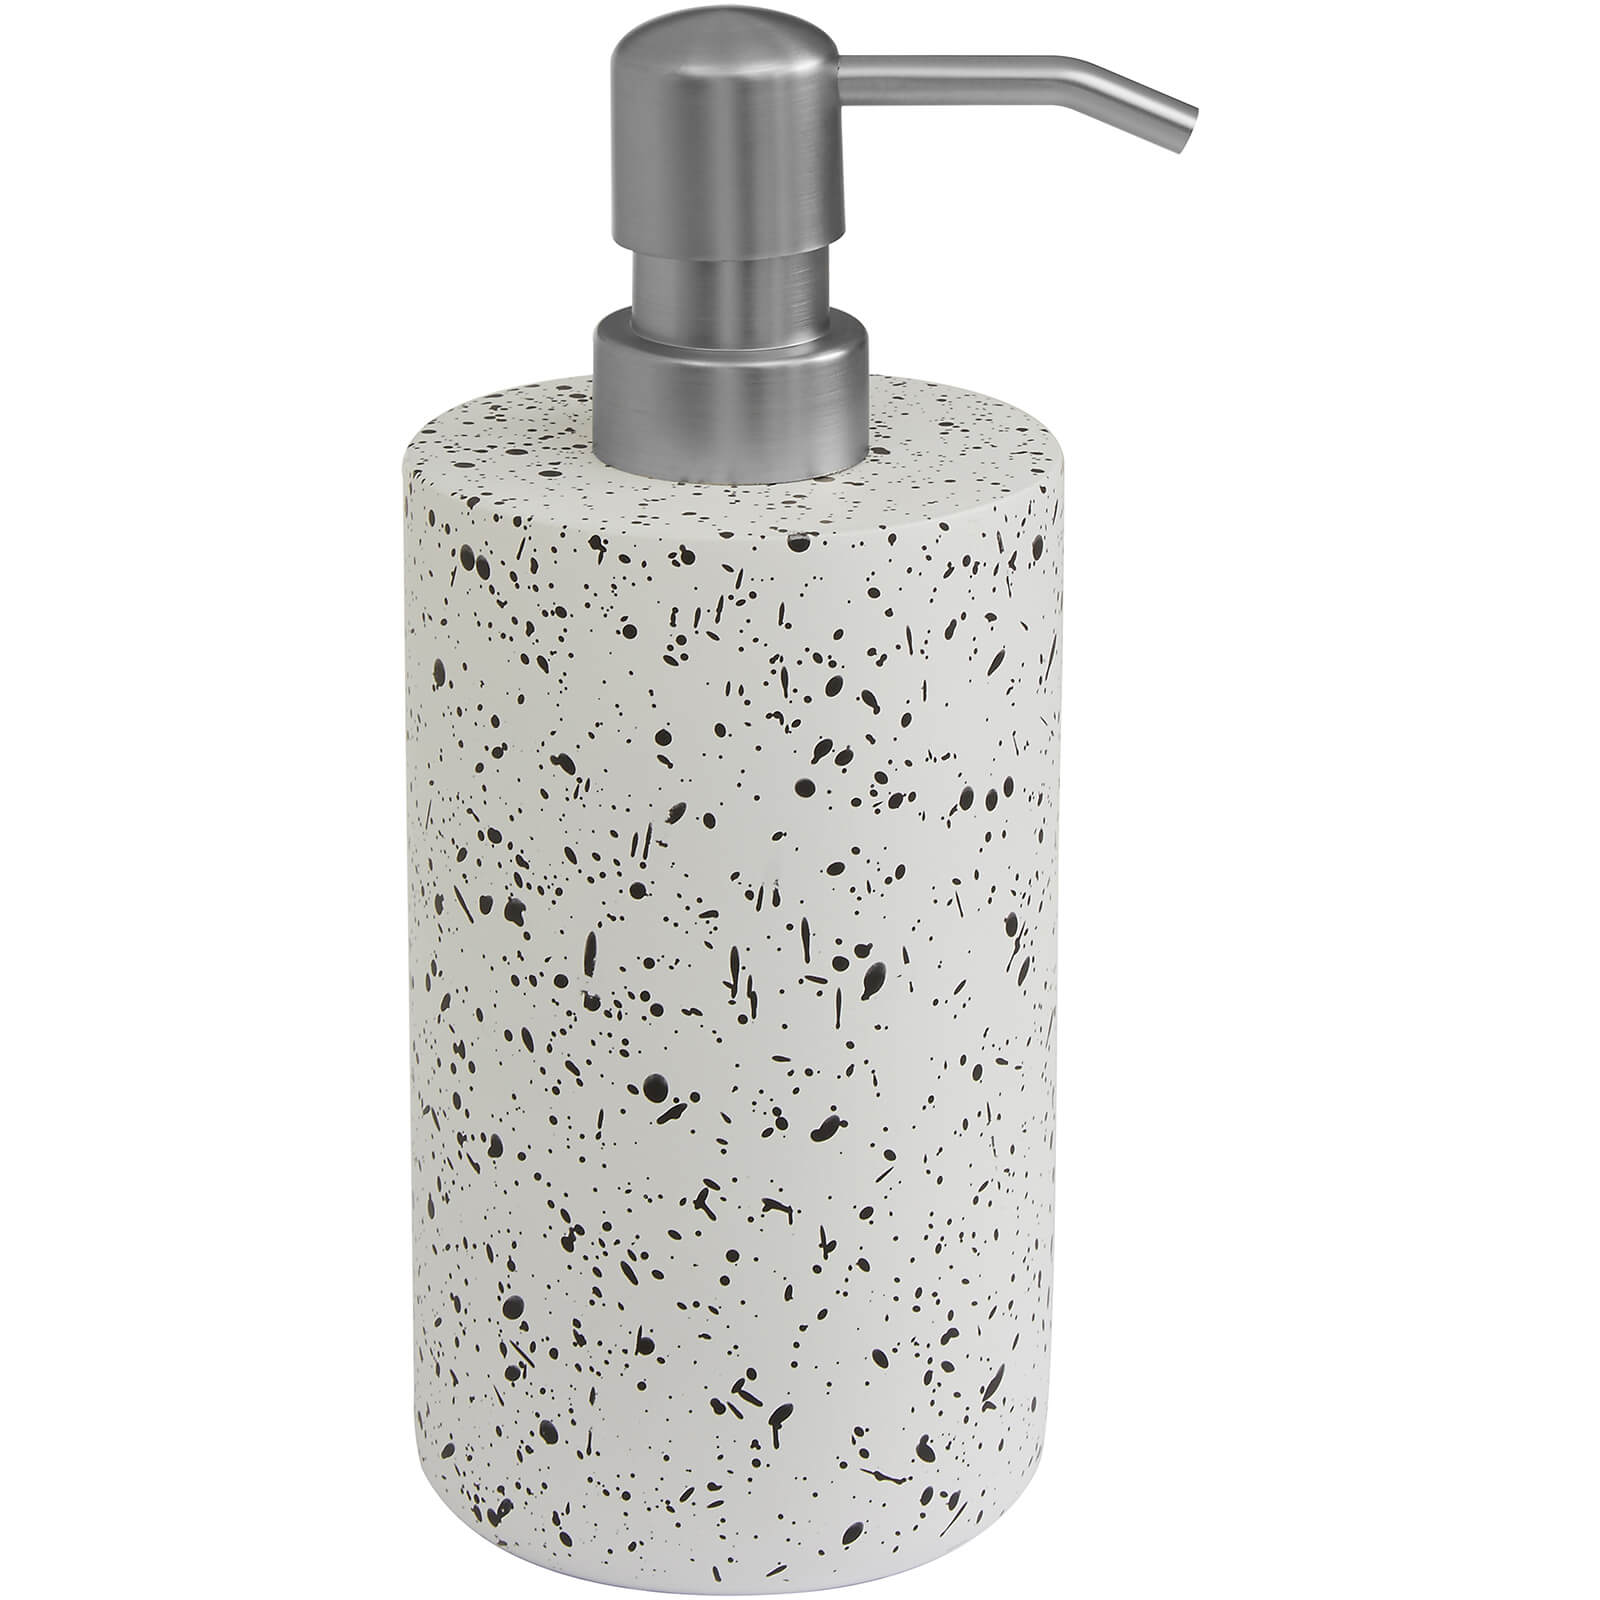 Image of Gozo Soap Dispenser - Concrete Terrazzo